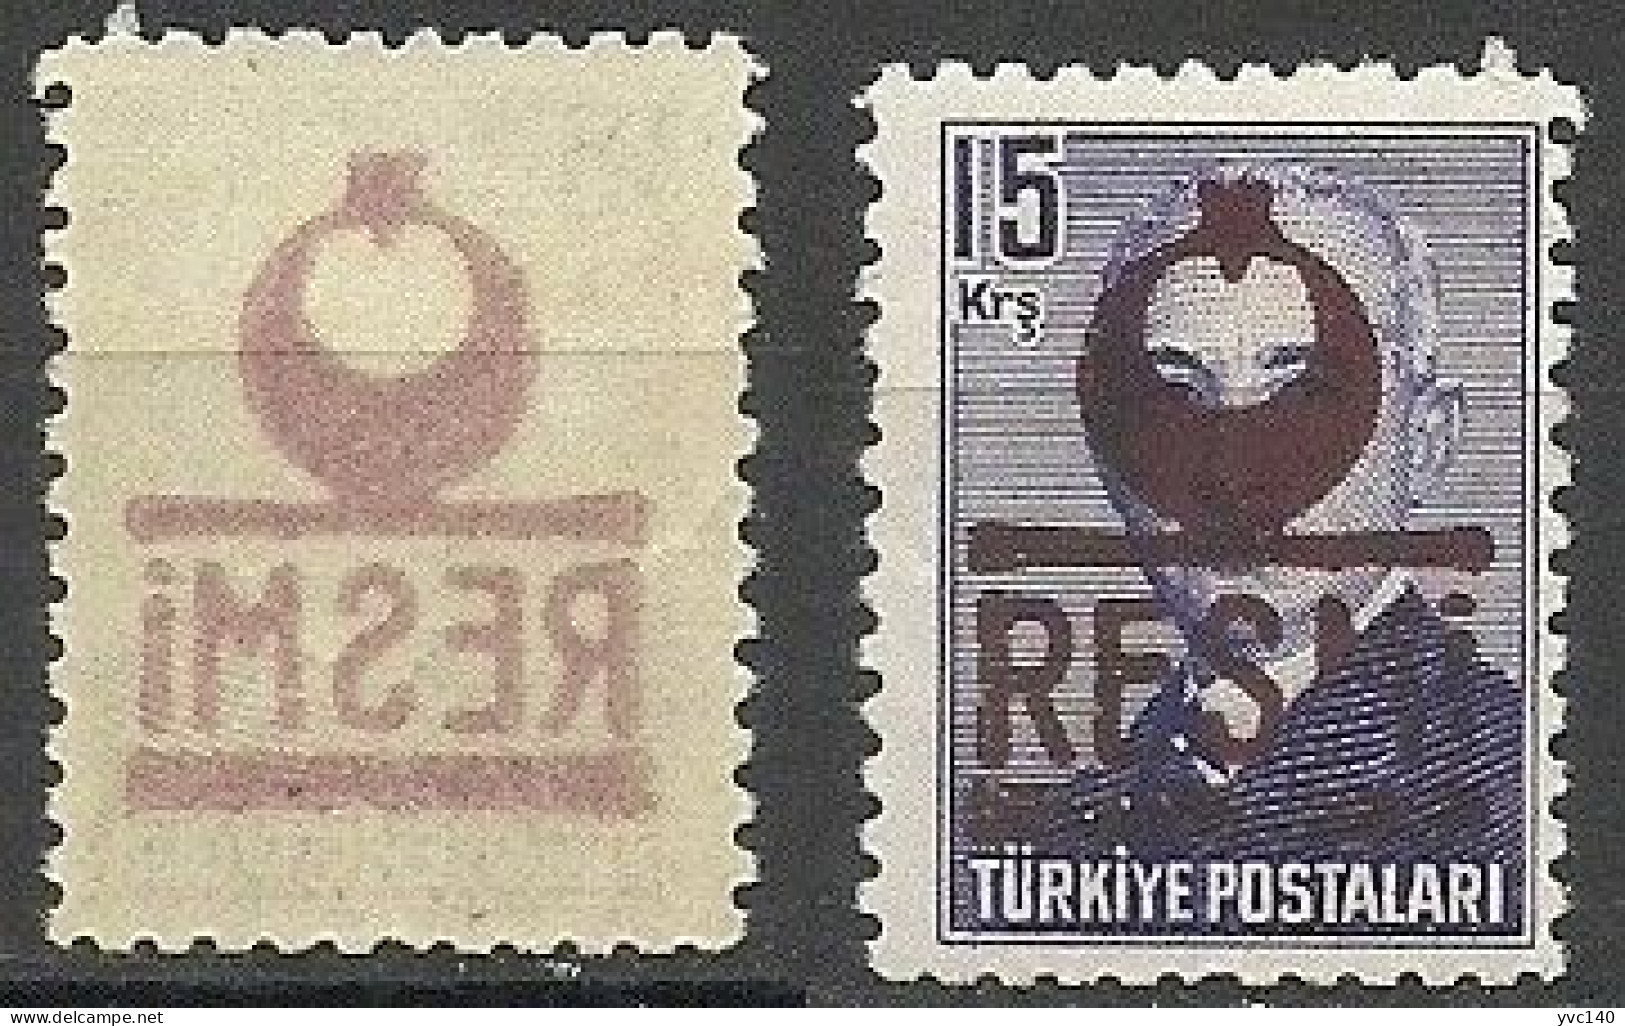 Turkey; 1953 Official Stamp 15 K. ERROR "Abklatsch Overprint" - Official Stamps